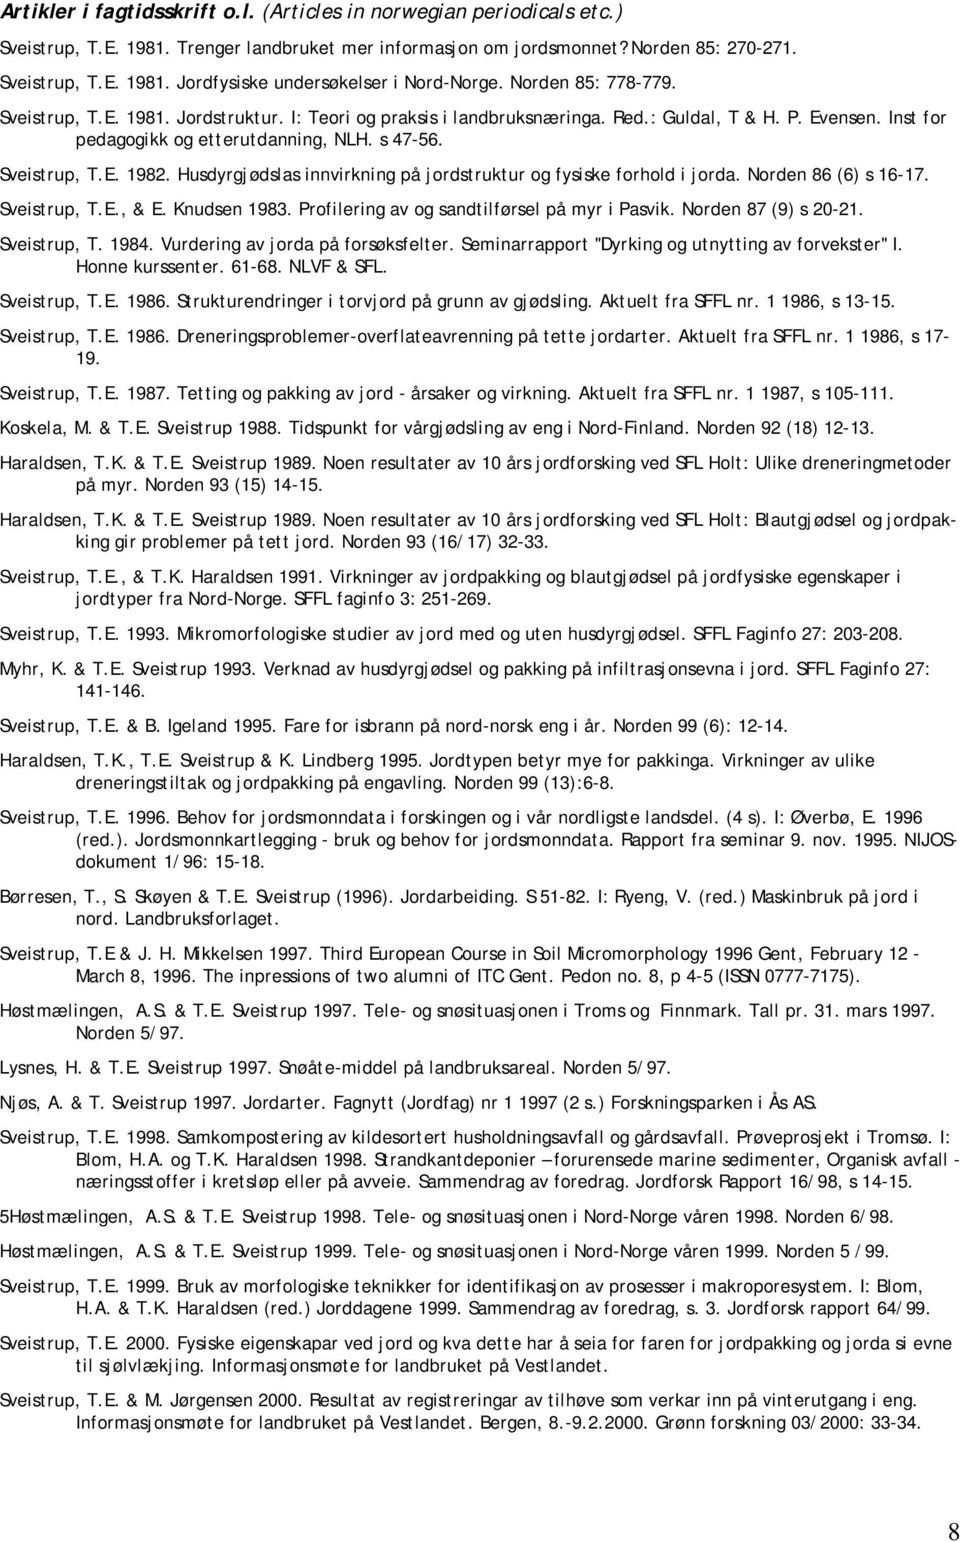 Husdyrgjødslas innvirkning på jordstruktur og fysiske forhold i jorda. Norden 86 (6) s 16-17. Sveistrup, T.E., & E. Knudsen 1983. Profilering av og sandtilførsel på myr i Pasvik.